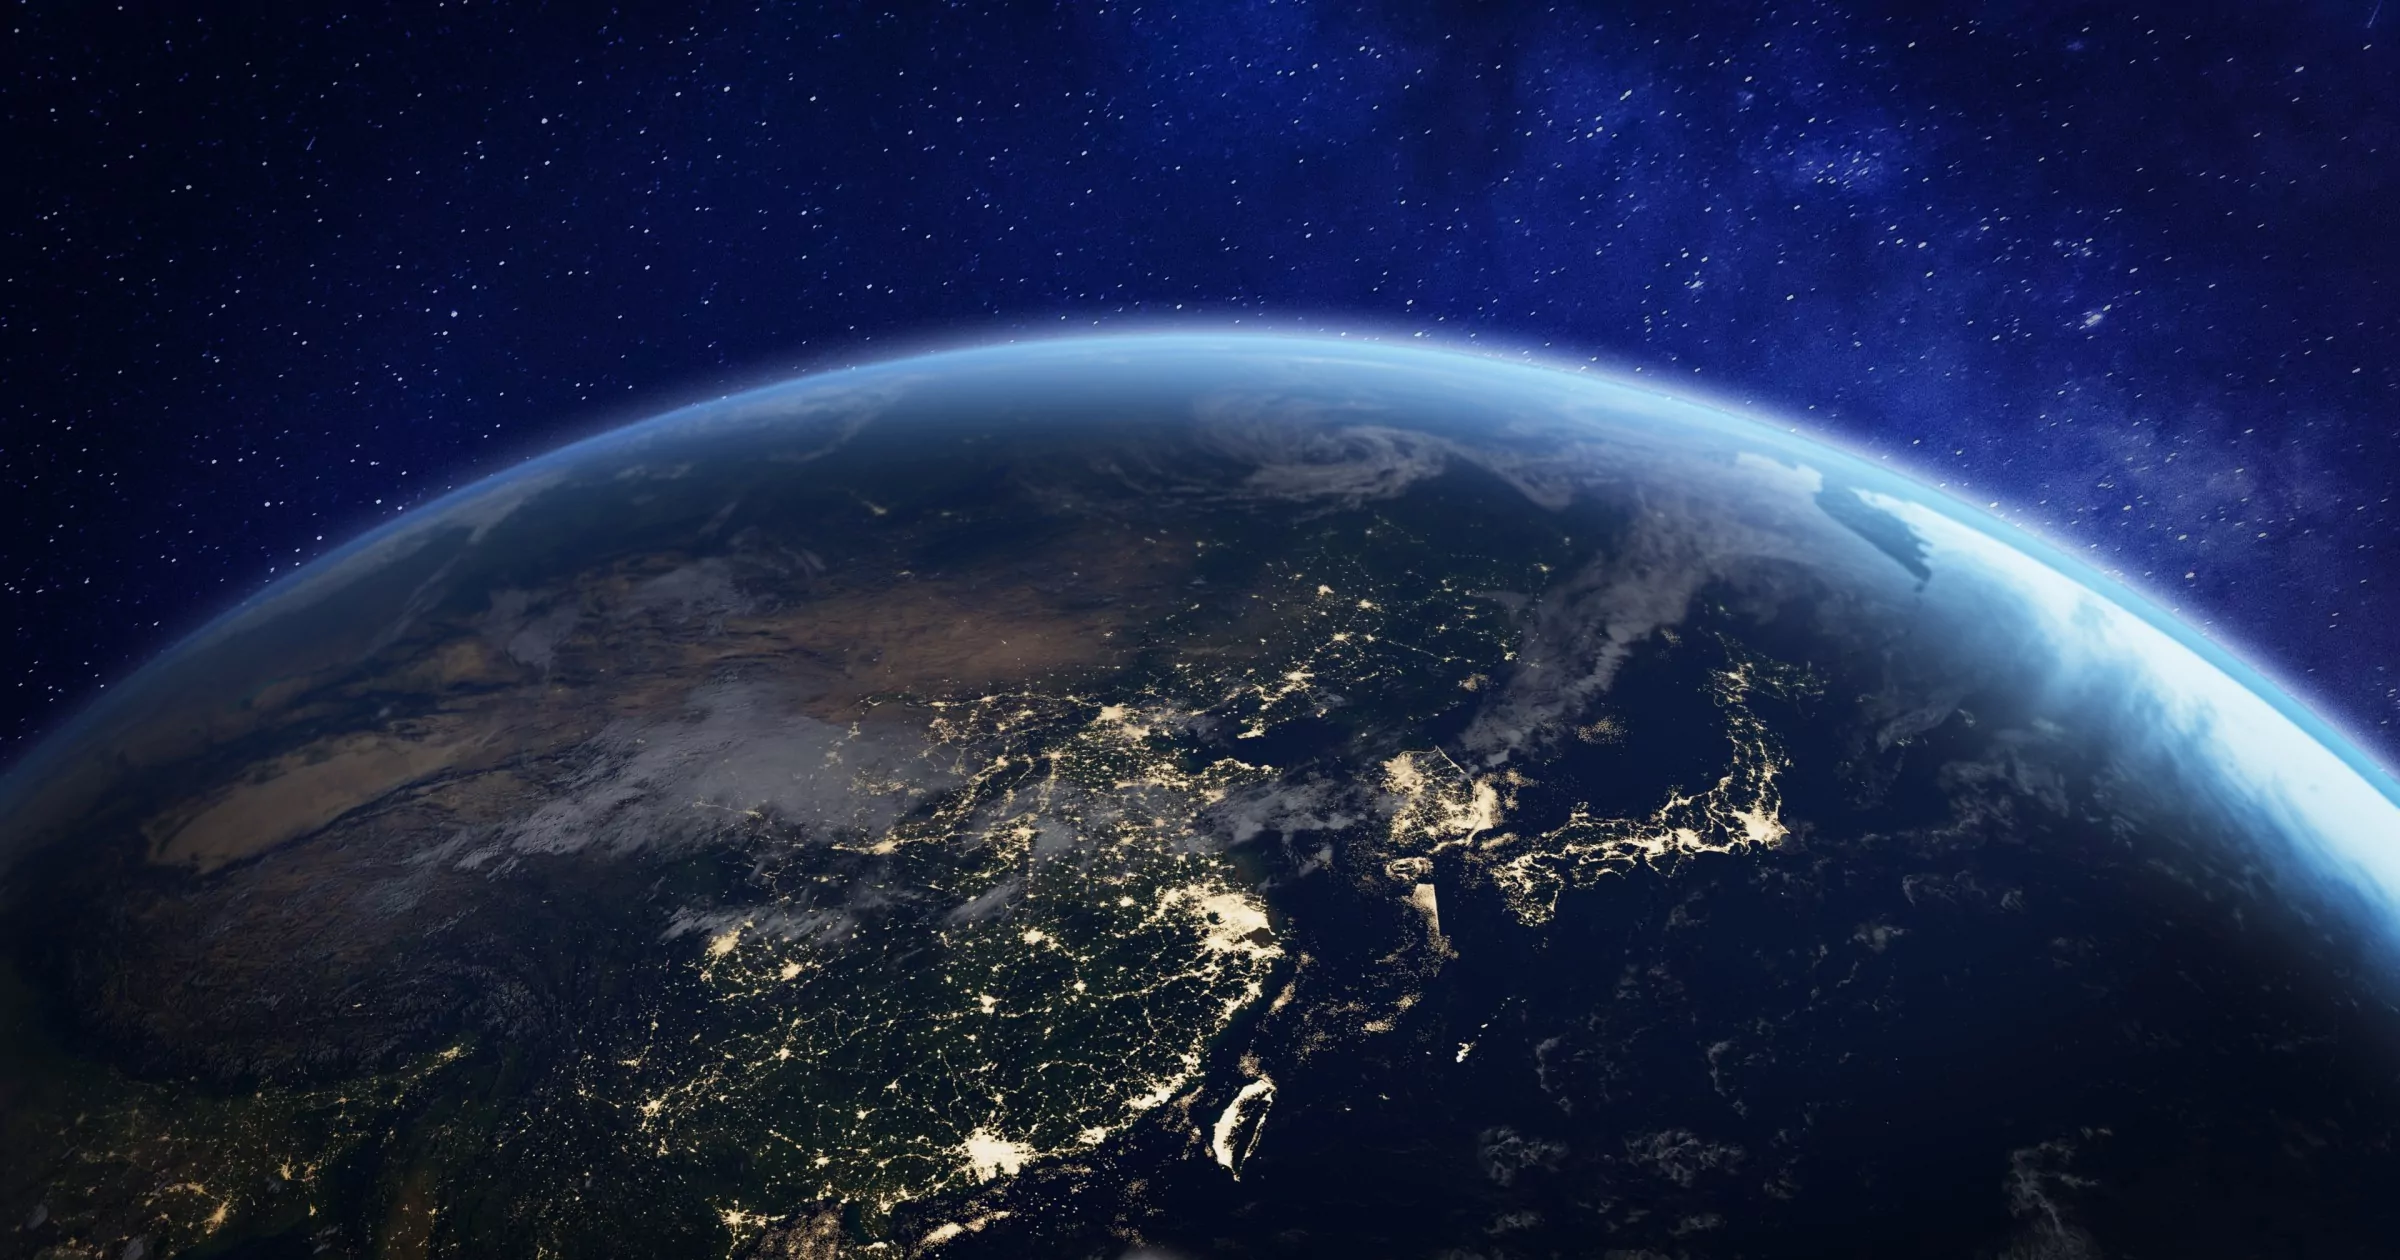 Bild der Erde aus dem Weltraum, das die nördliche Hemisphäre und die Lichter eines Landes zeigt